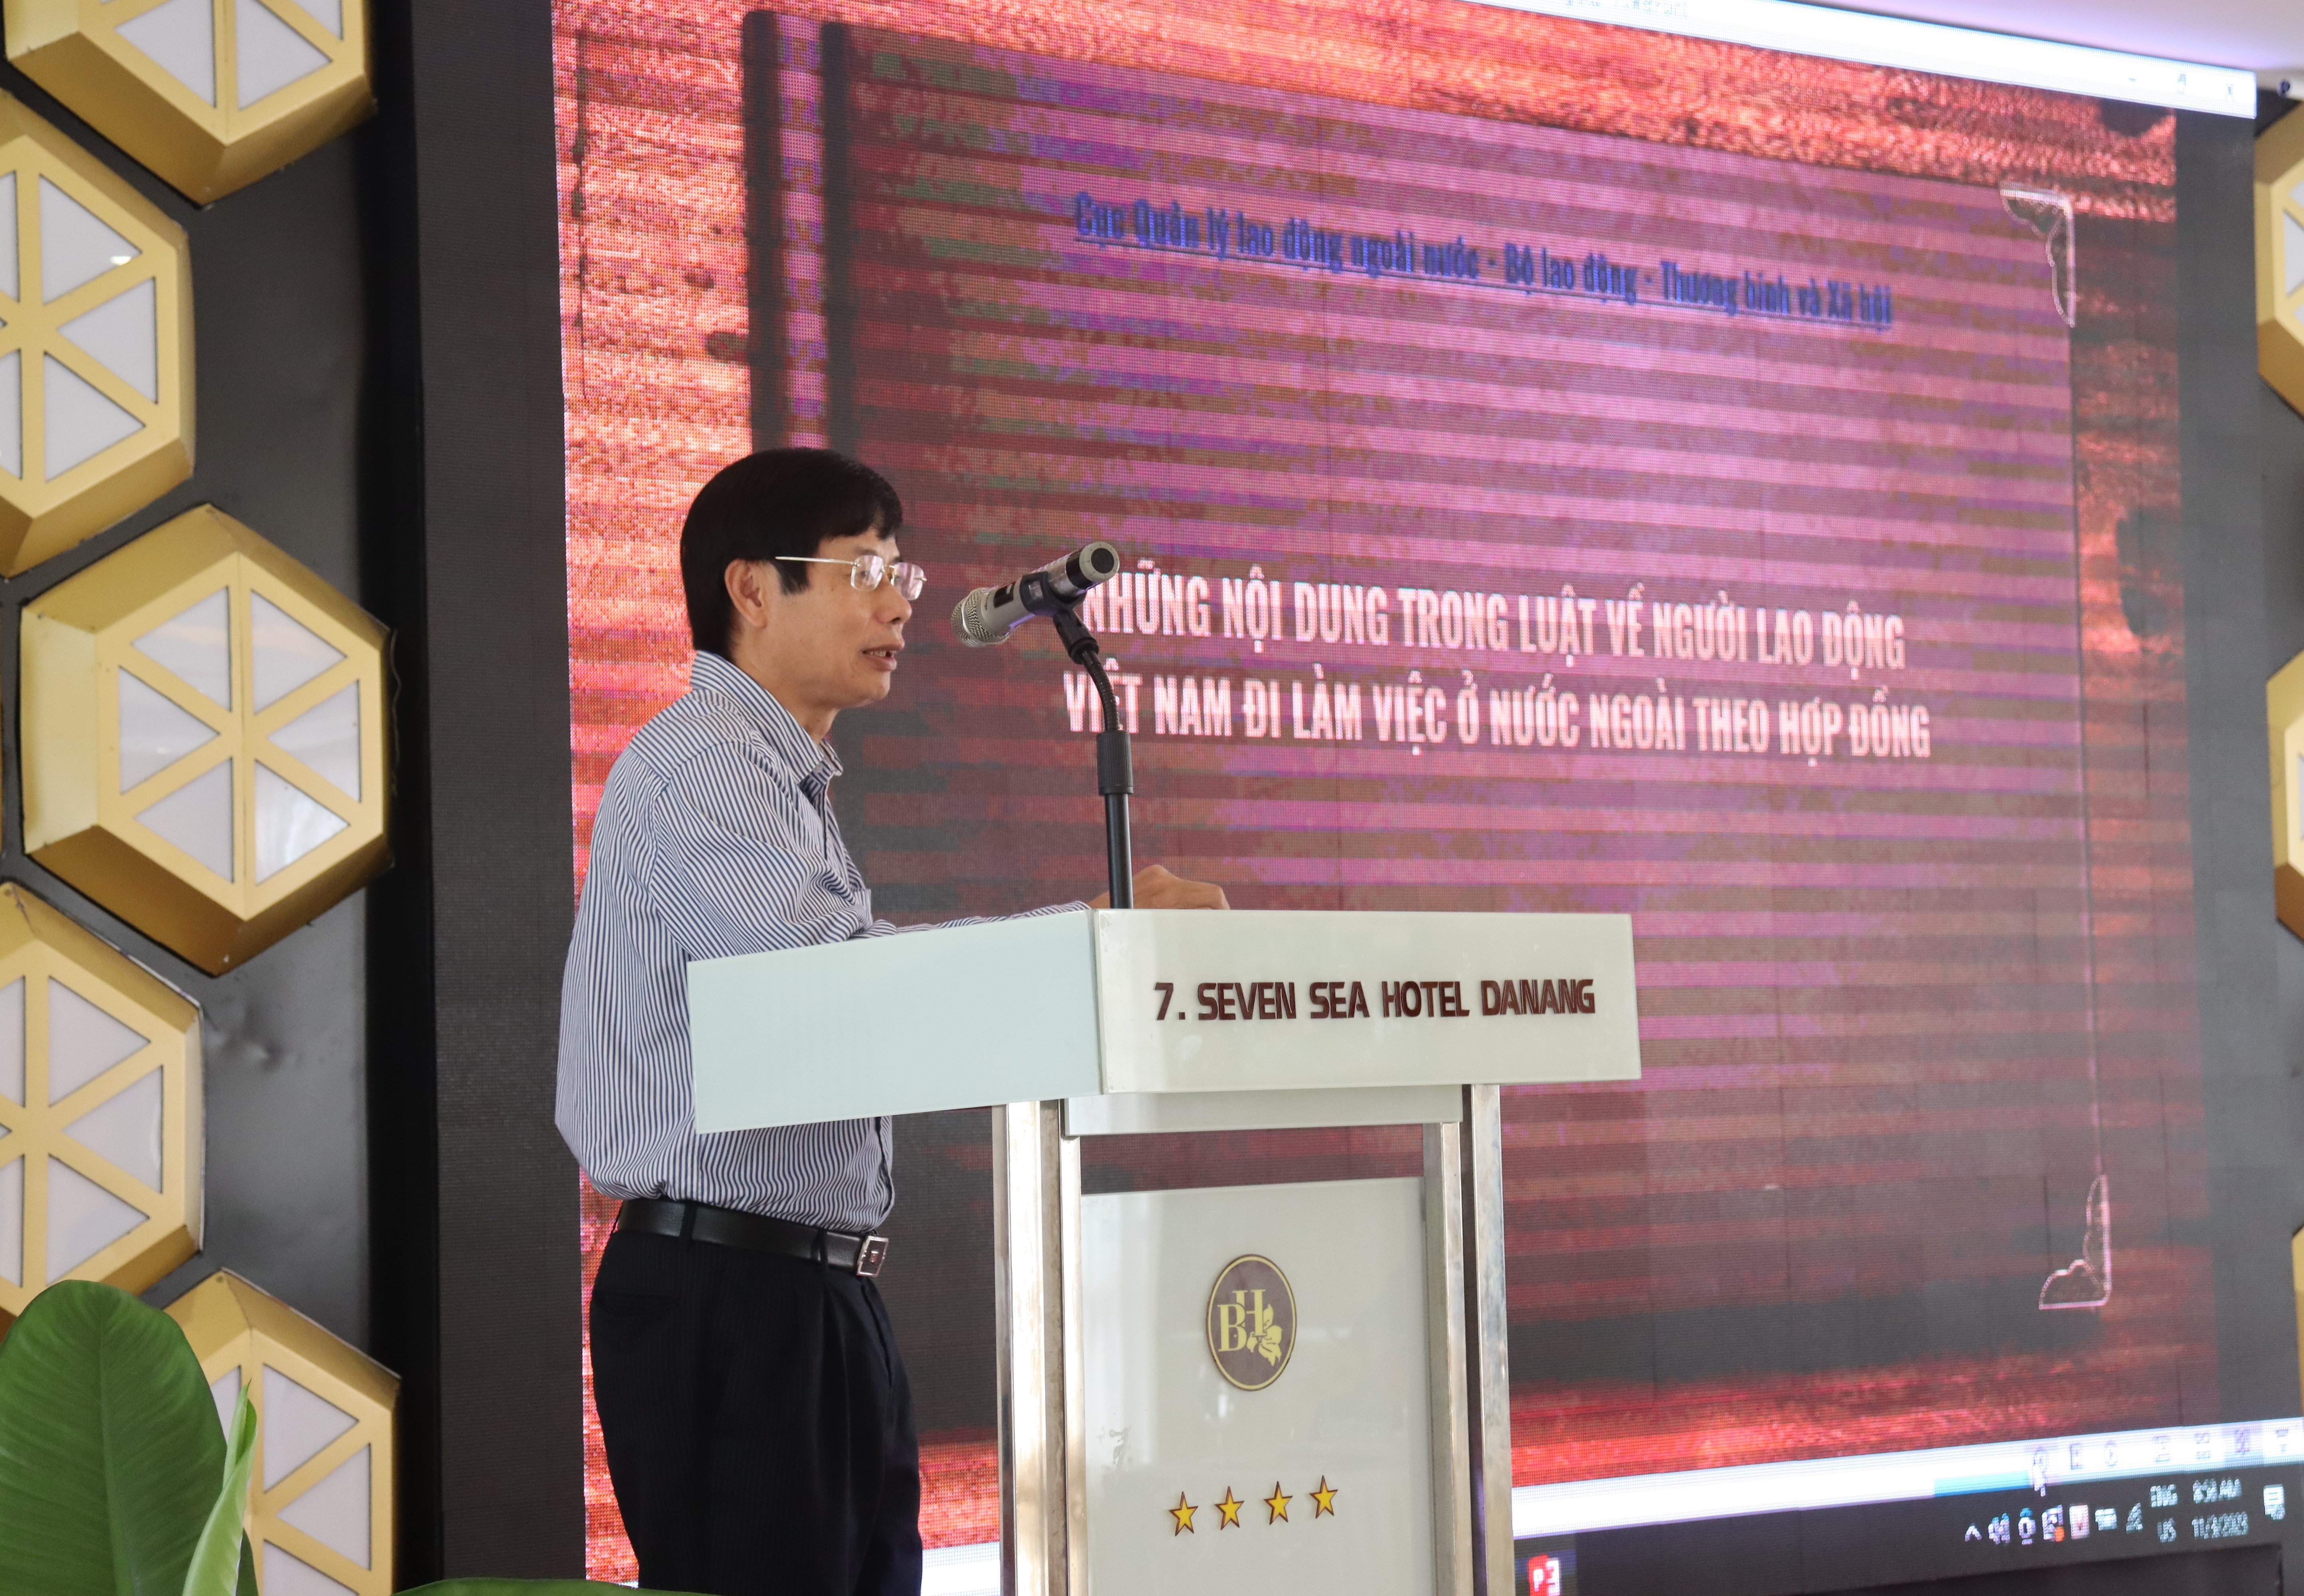 Ông Nguyễn Gia Liêm, Phó Cục trưởng DOLAB, chia sẻ Những nội dung trong luật về người lao động Việt Nam đi làm việc ở nước ngoài theo hợp đồng. Ảnh @ IOM Việt Nam